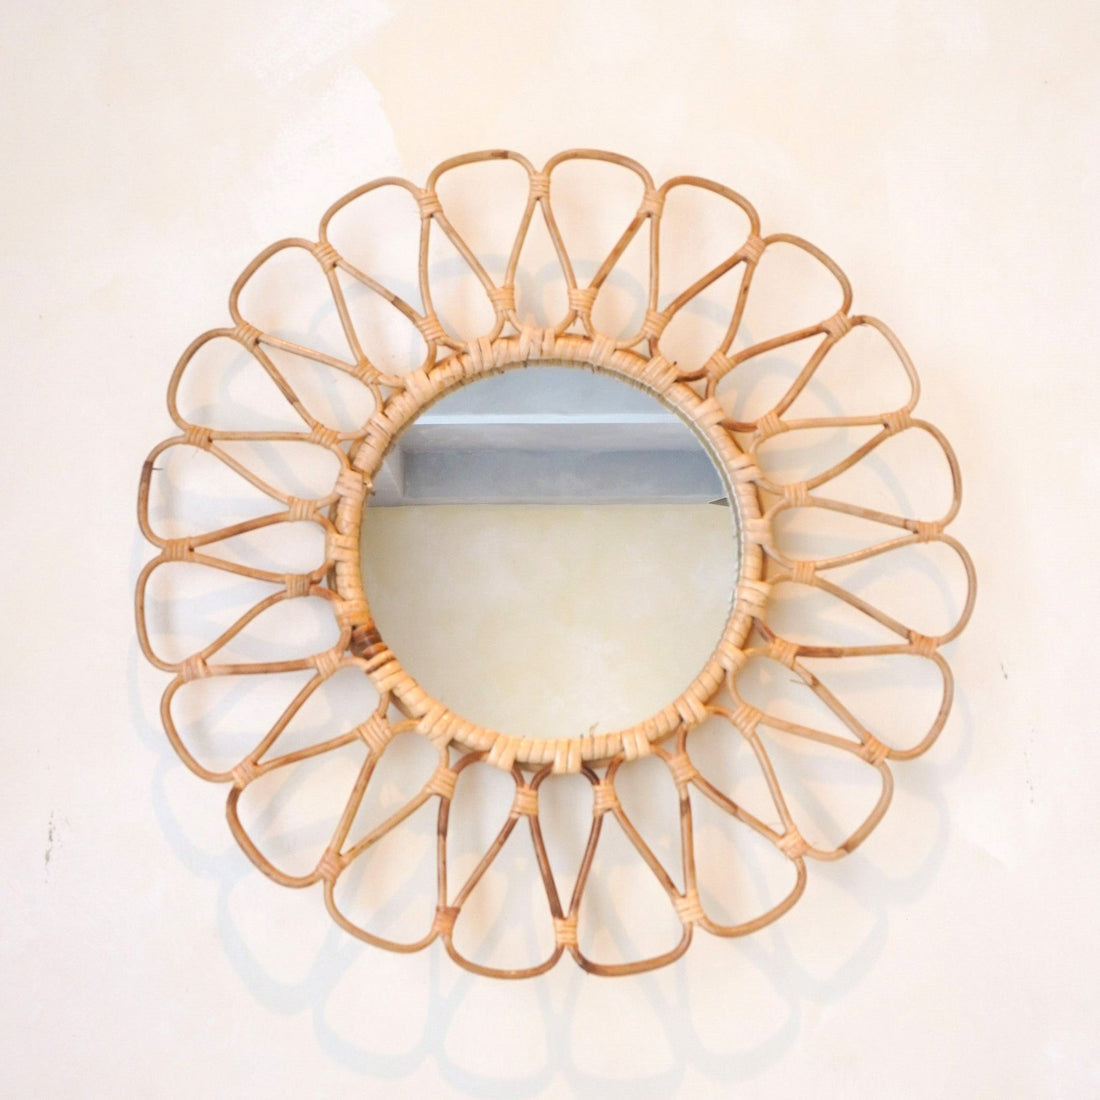 Kleine rotan spiegel 38 cm handgemaakte Boho wandspiegel DAAU wanddecoratie ronde spiegel decoratieve spiegel